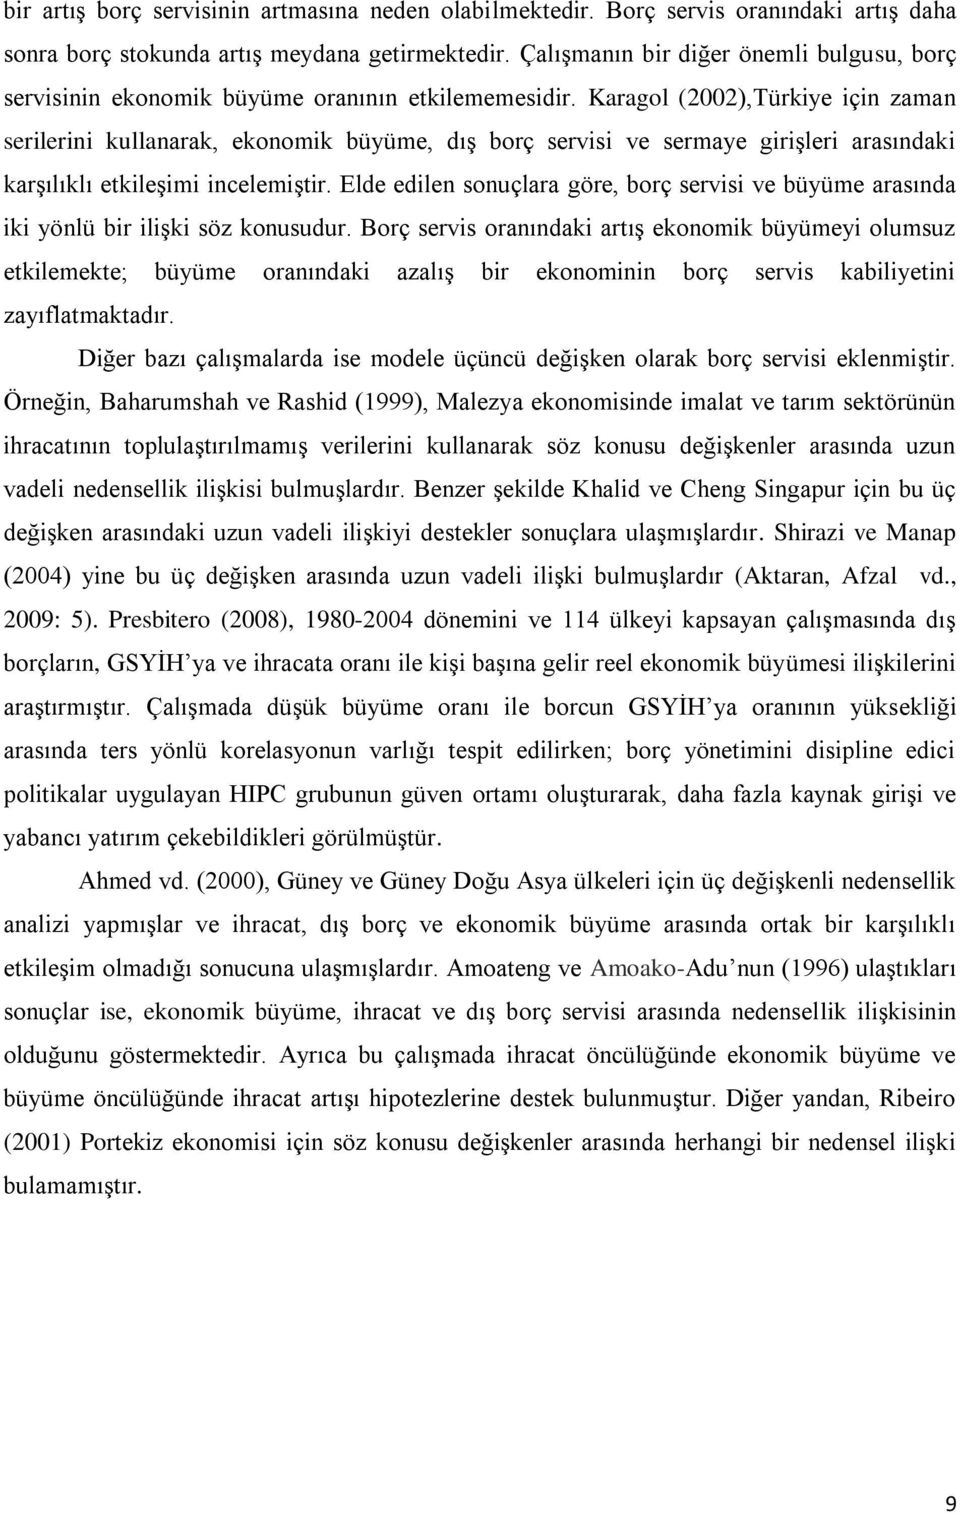 Karagol (2002),Türkiye için zaman serilerini kullanarak, ekonomik büyüme, dıģ borç servisi ve sermaye giriģleri arasındaki karģılıklı etkileģimi incelemiģtir.